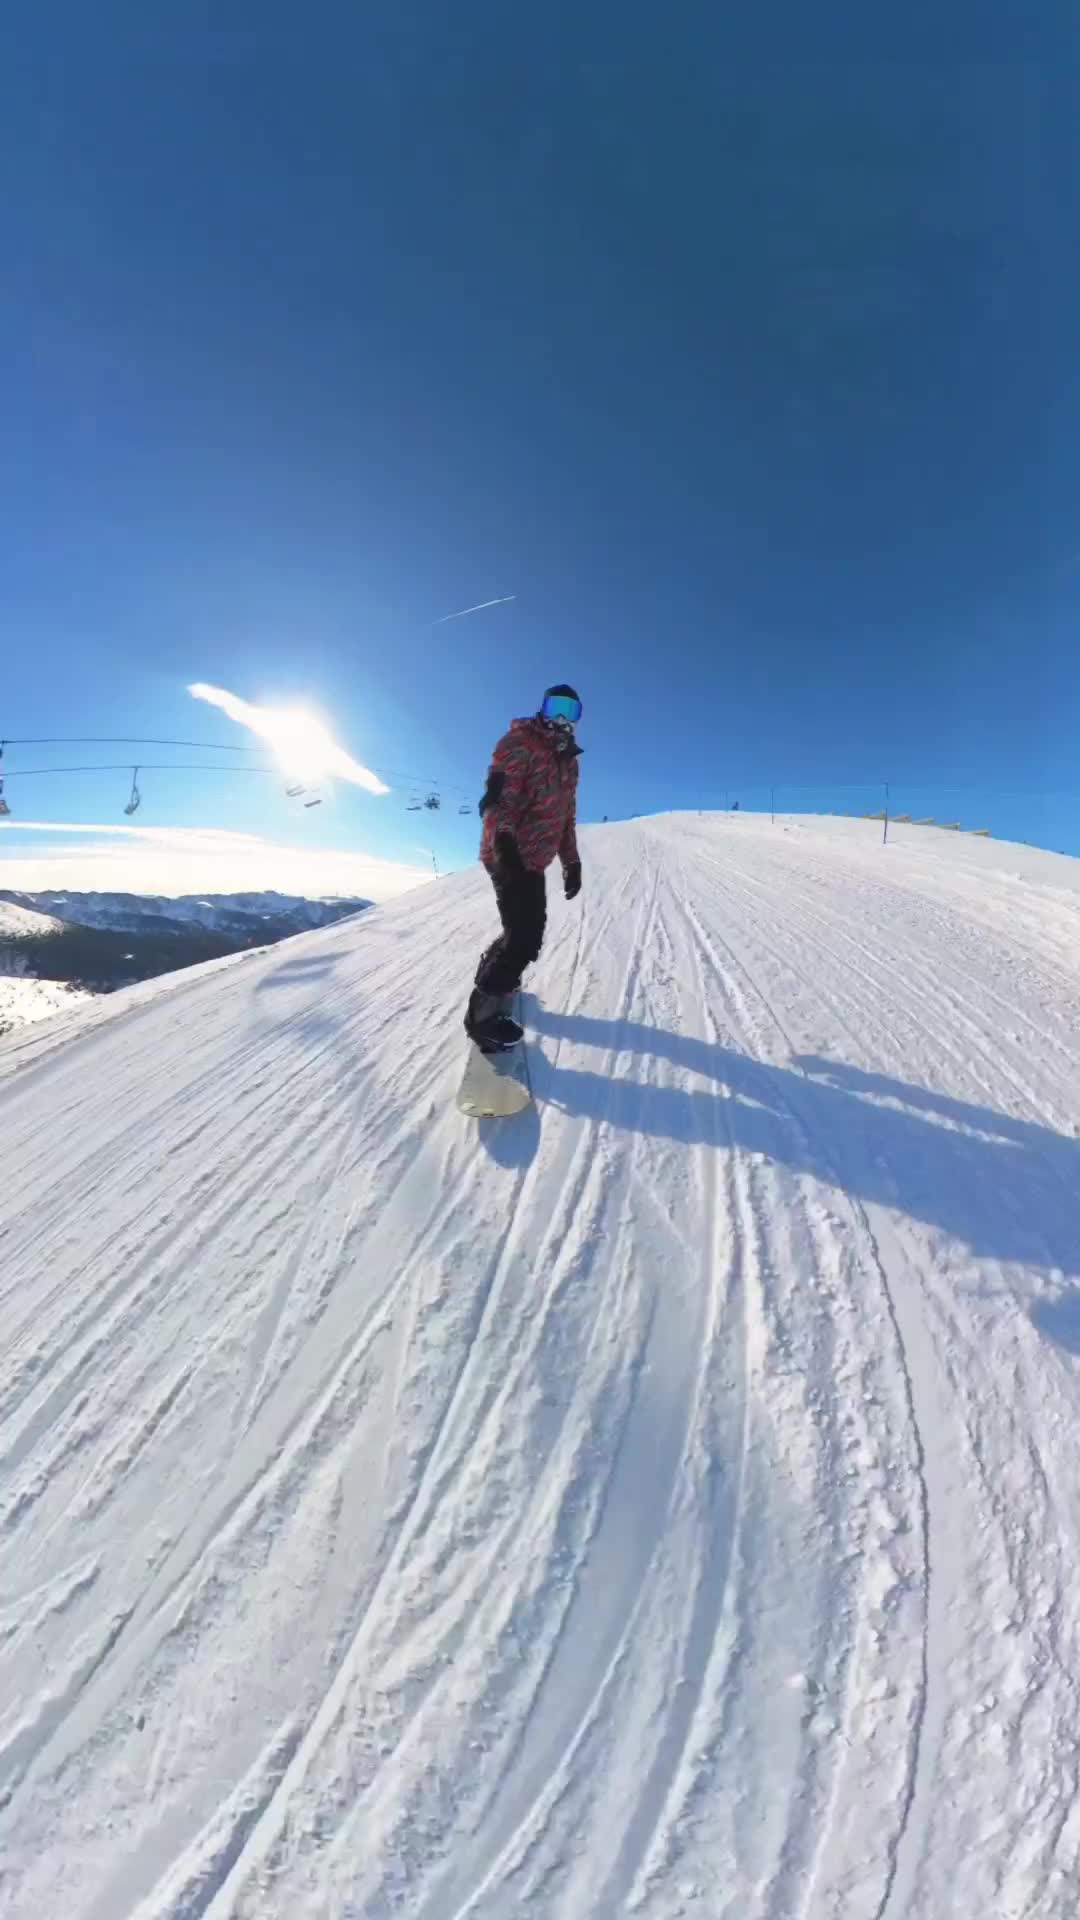 Snowboarding Fails and Fun in Andorra Grandvalira